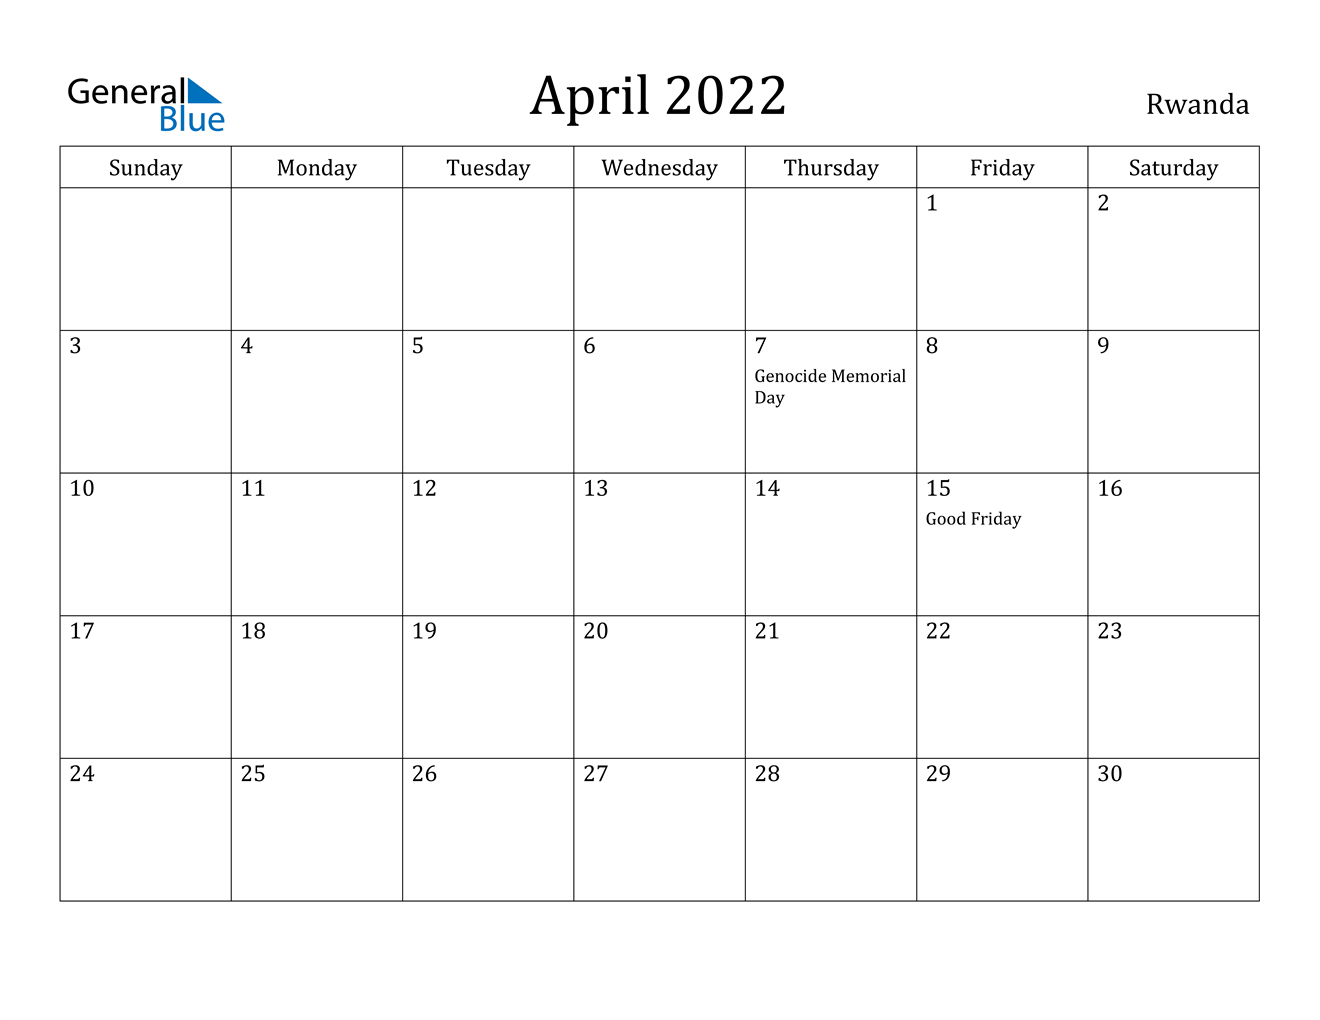 April 2022 Calendar - Rwanda